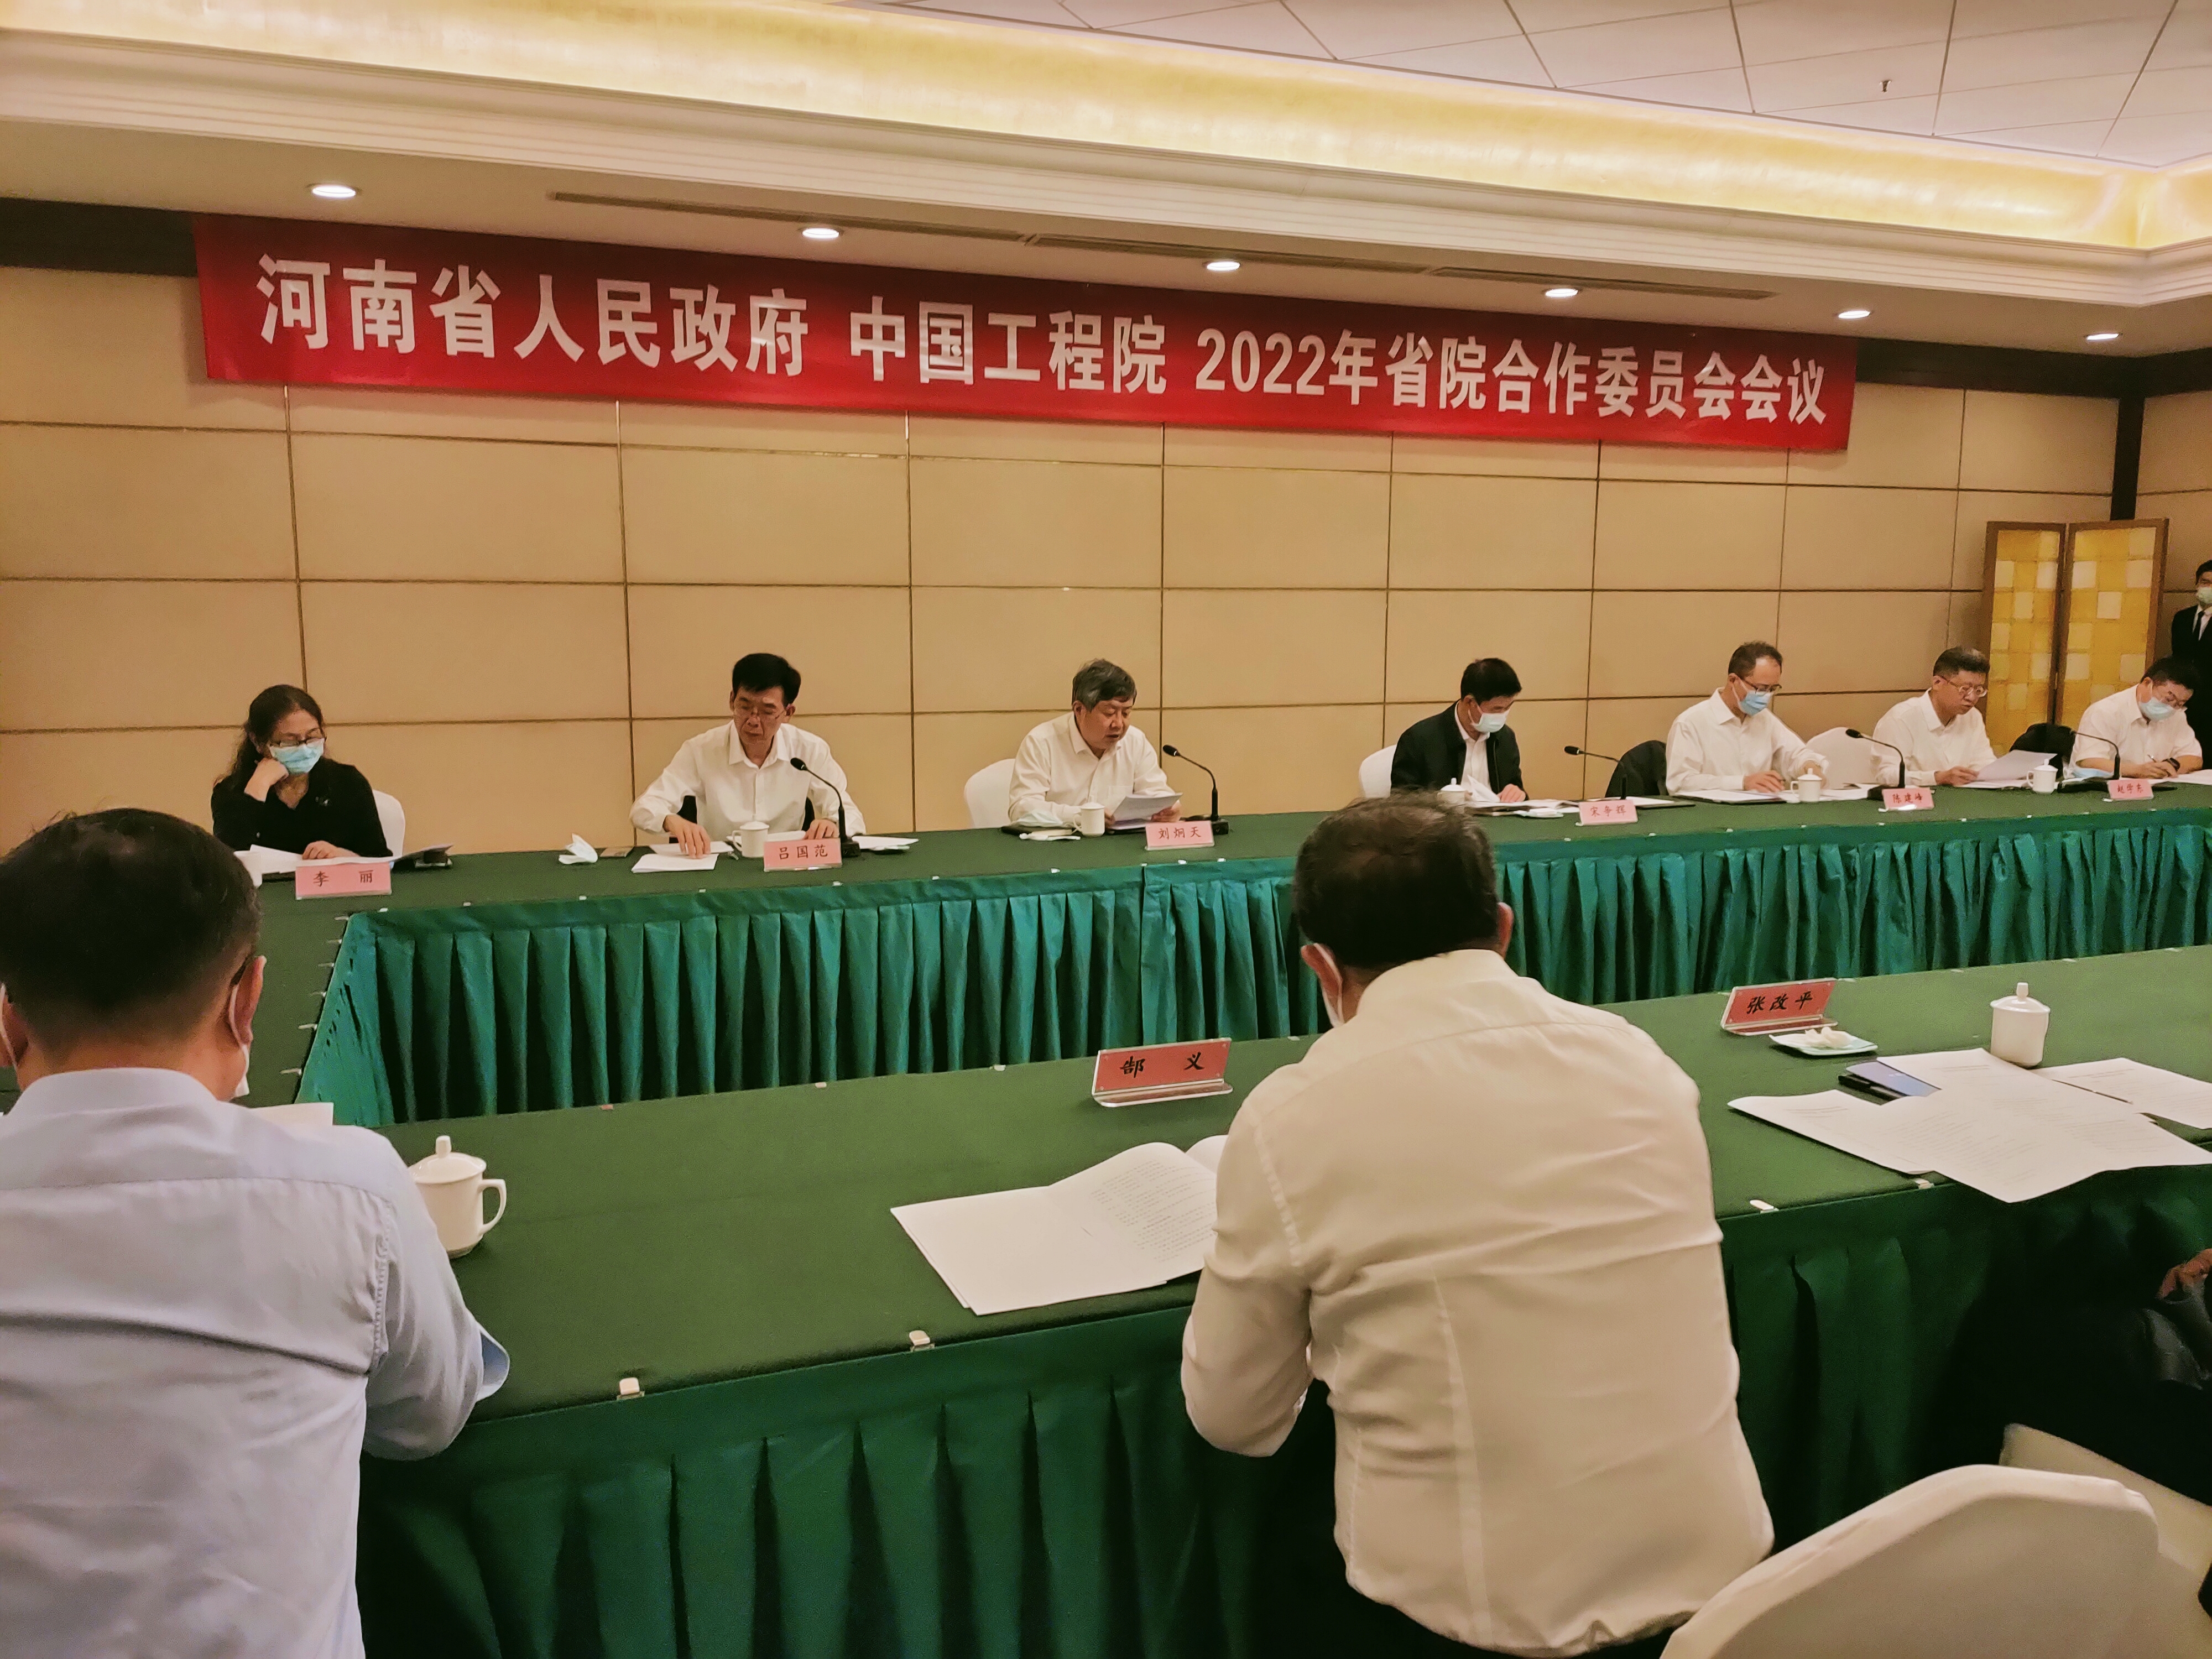 刘炯天领衔 18位院士“成团” 中国工程科技发展战略河南研究院来了